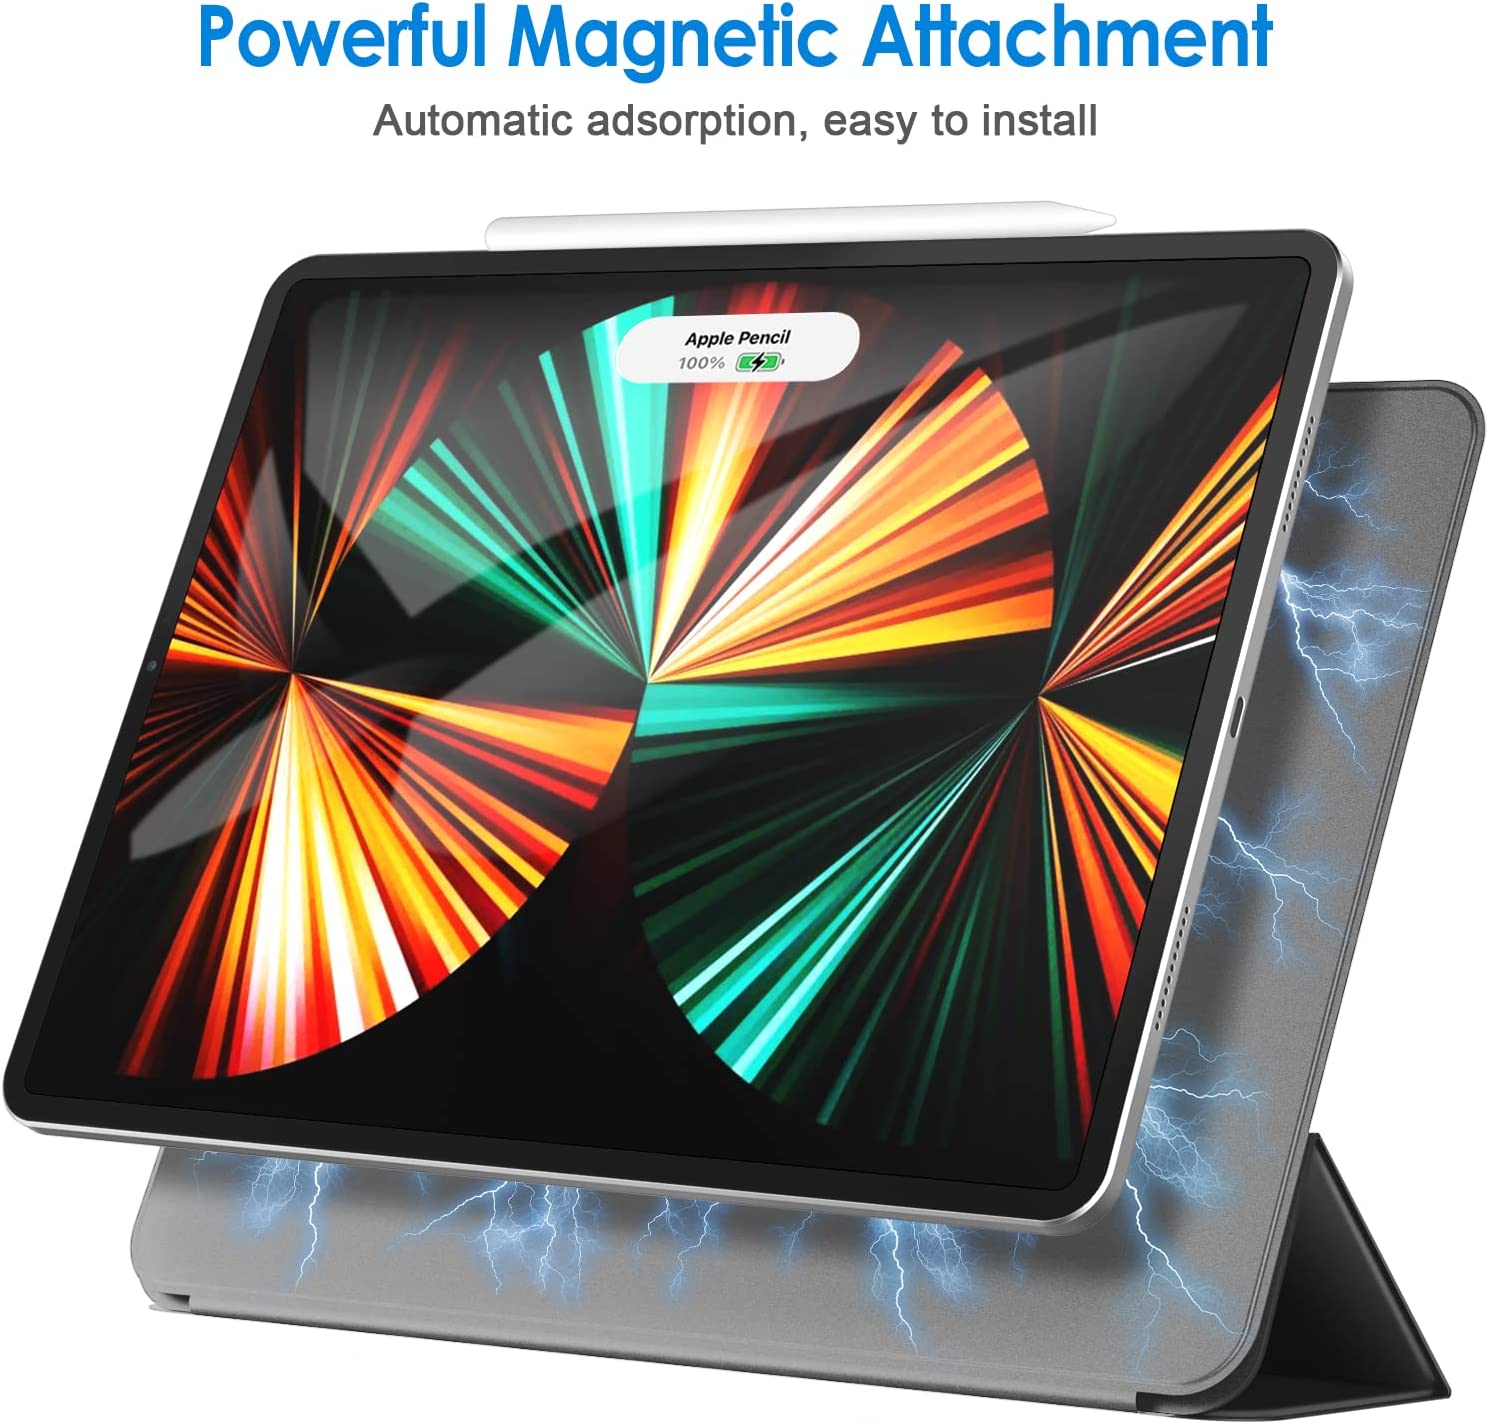 Coque Magnétique JETech pour iPad Pro 12,9 Pouces 2021, 2020, 2018 (5ème, 4ème, 3ème Génération), la Charge de Pencil 2e Génération, Housse Étui Réveil et Veille Automatique (Noir) 3